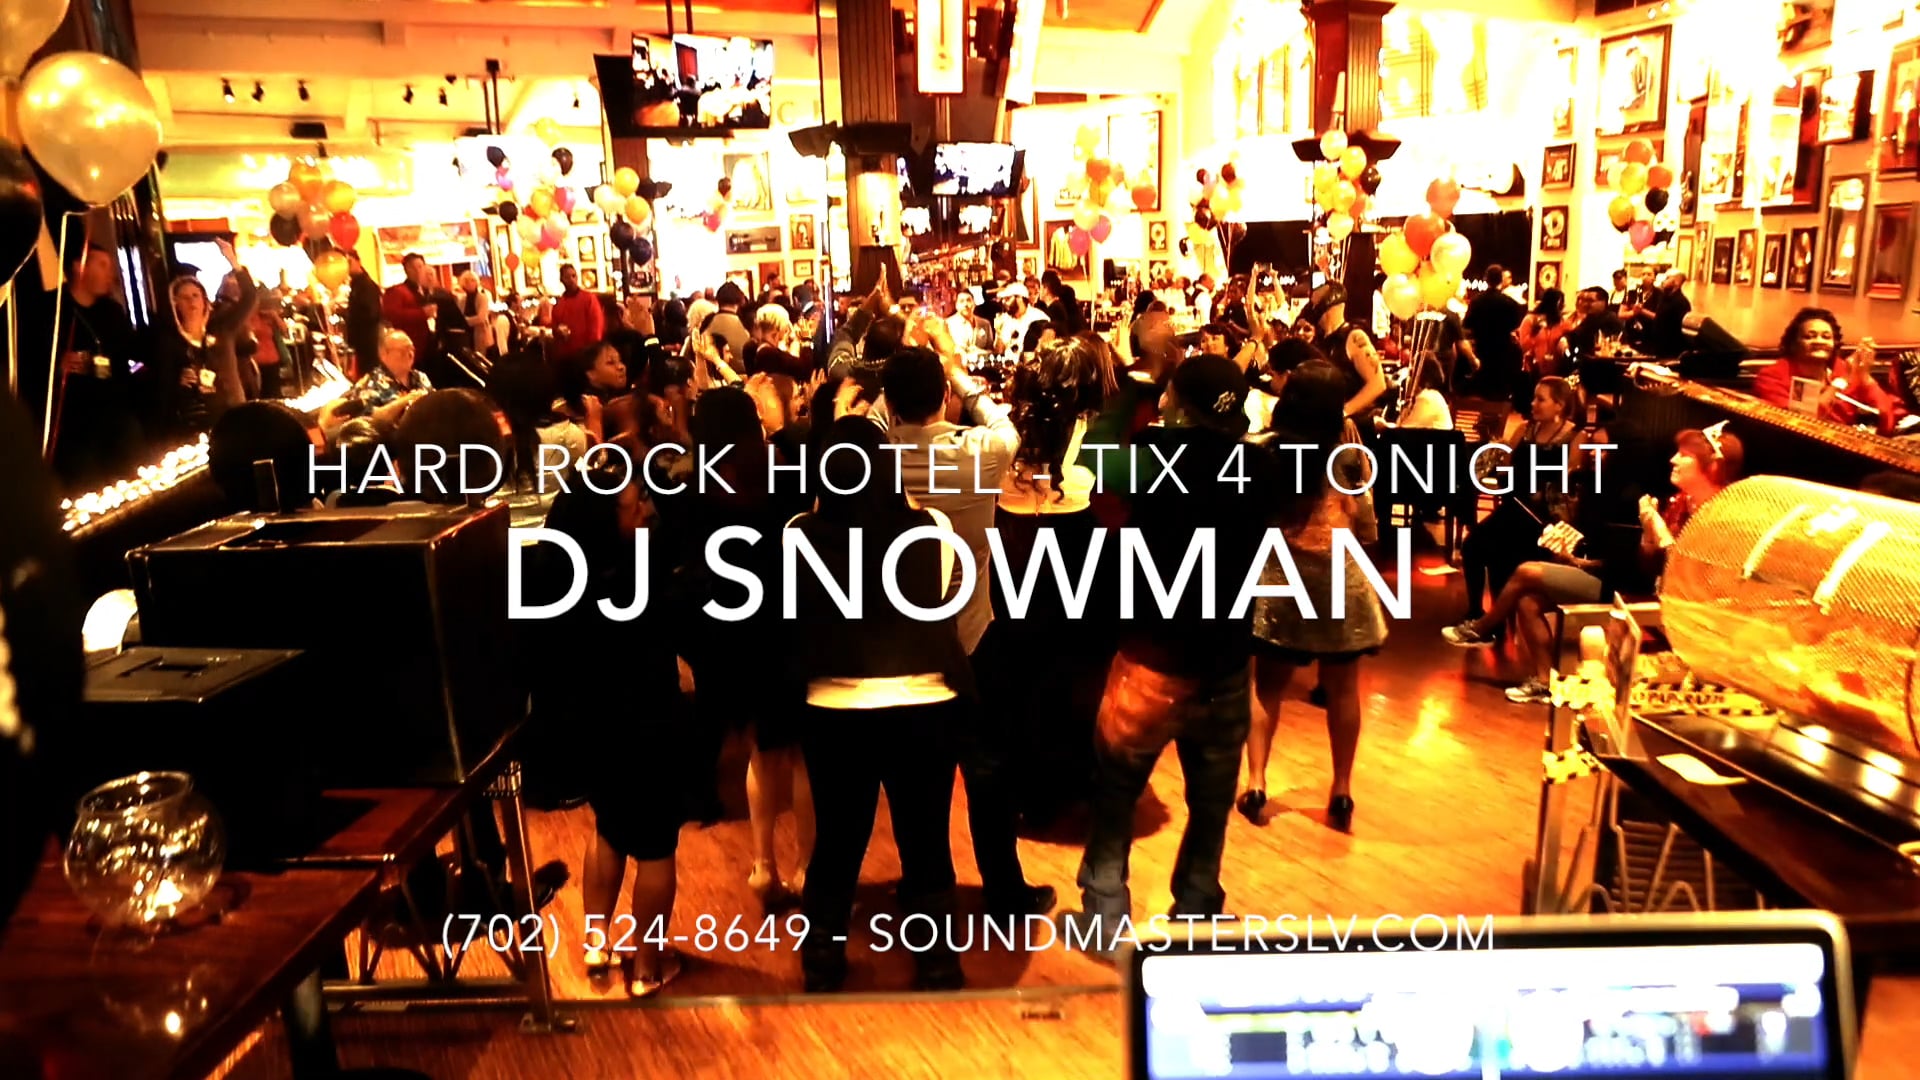 Hard Rock Hotel - TIX 4 TONIGHT - DJ Snowman